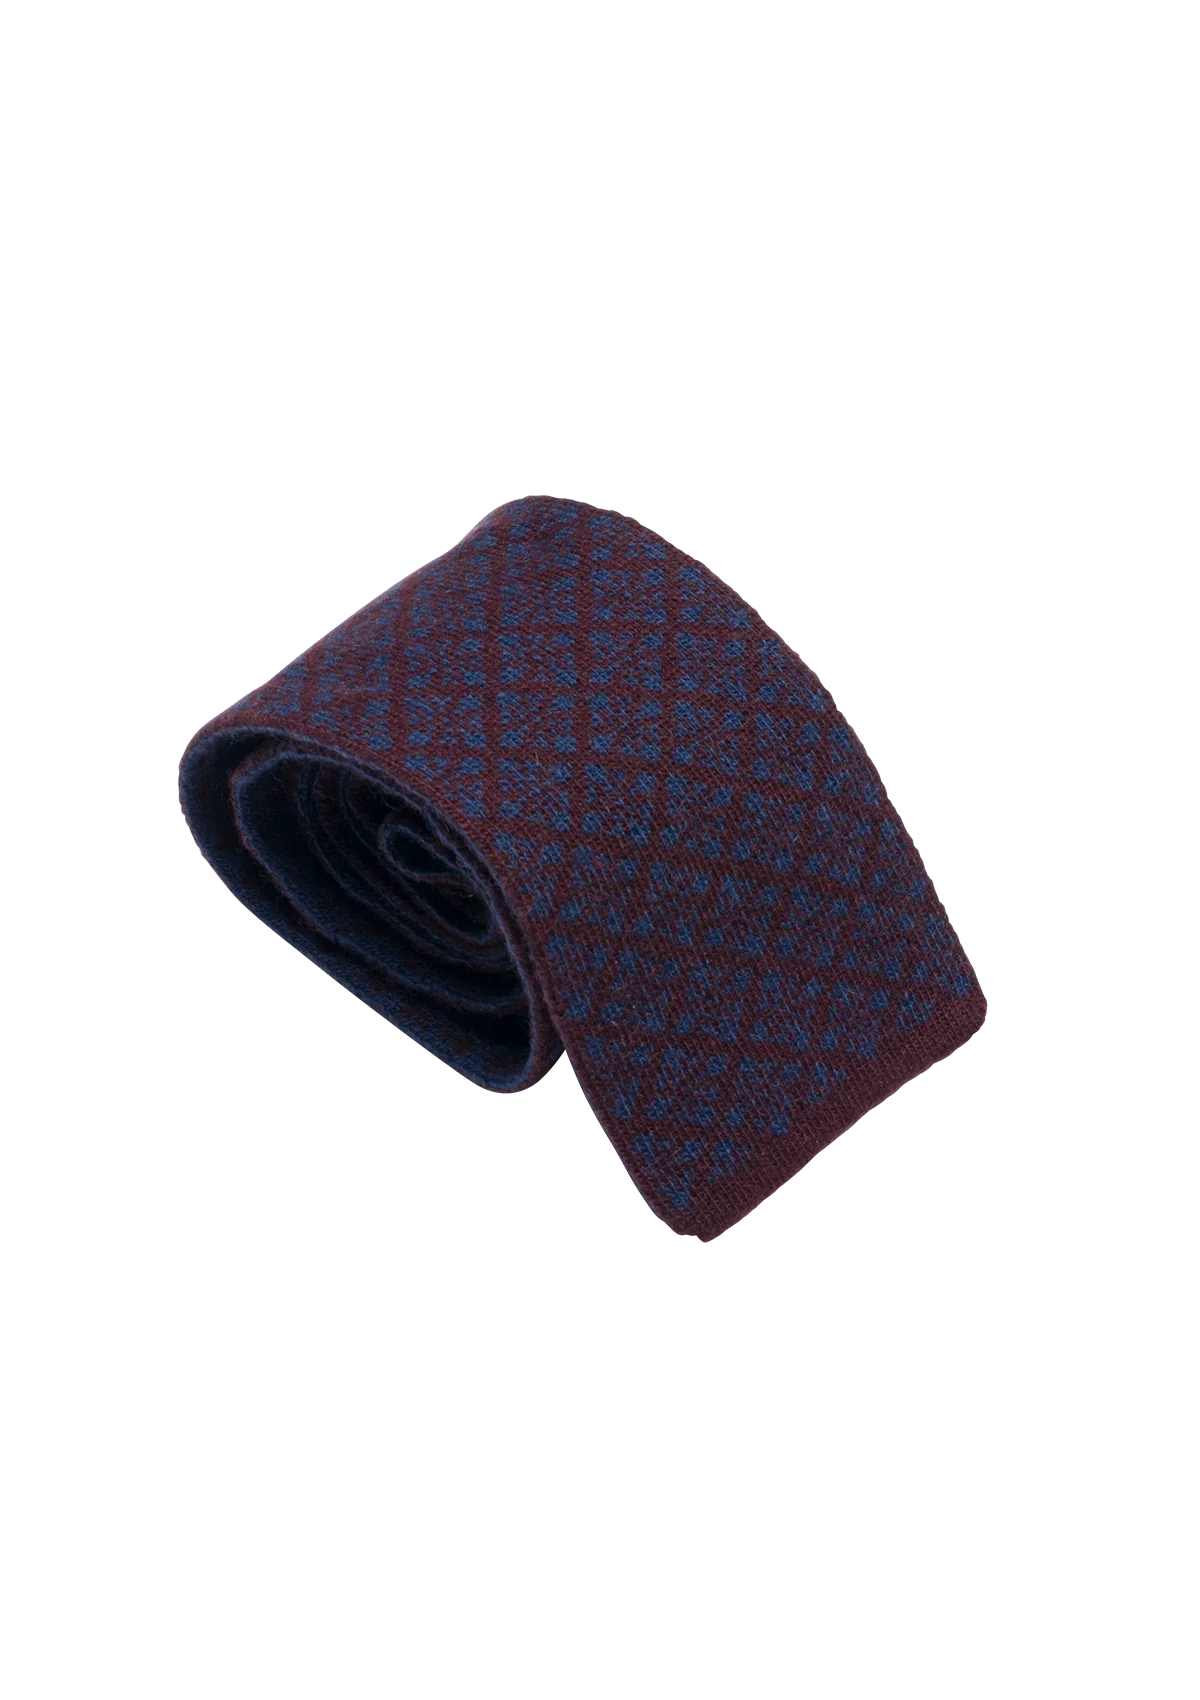 Vinous & Blue Wool Maglia Tie, Pattern 5